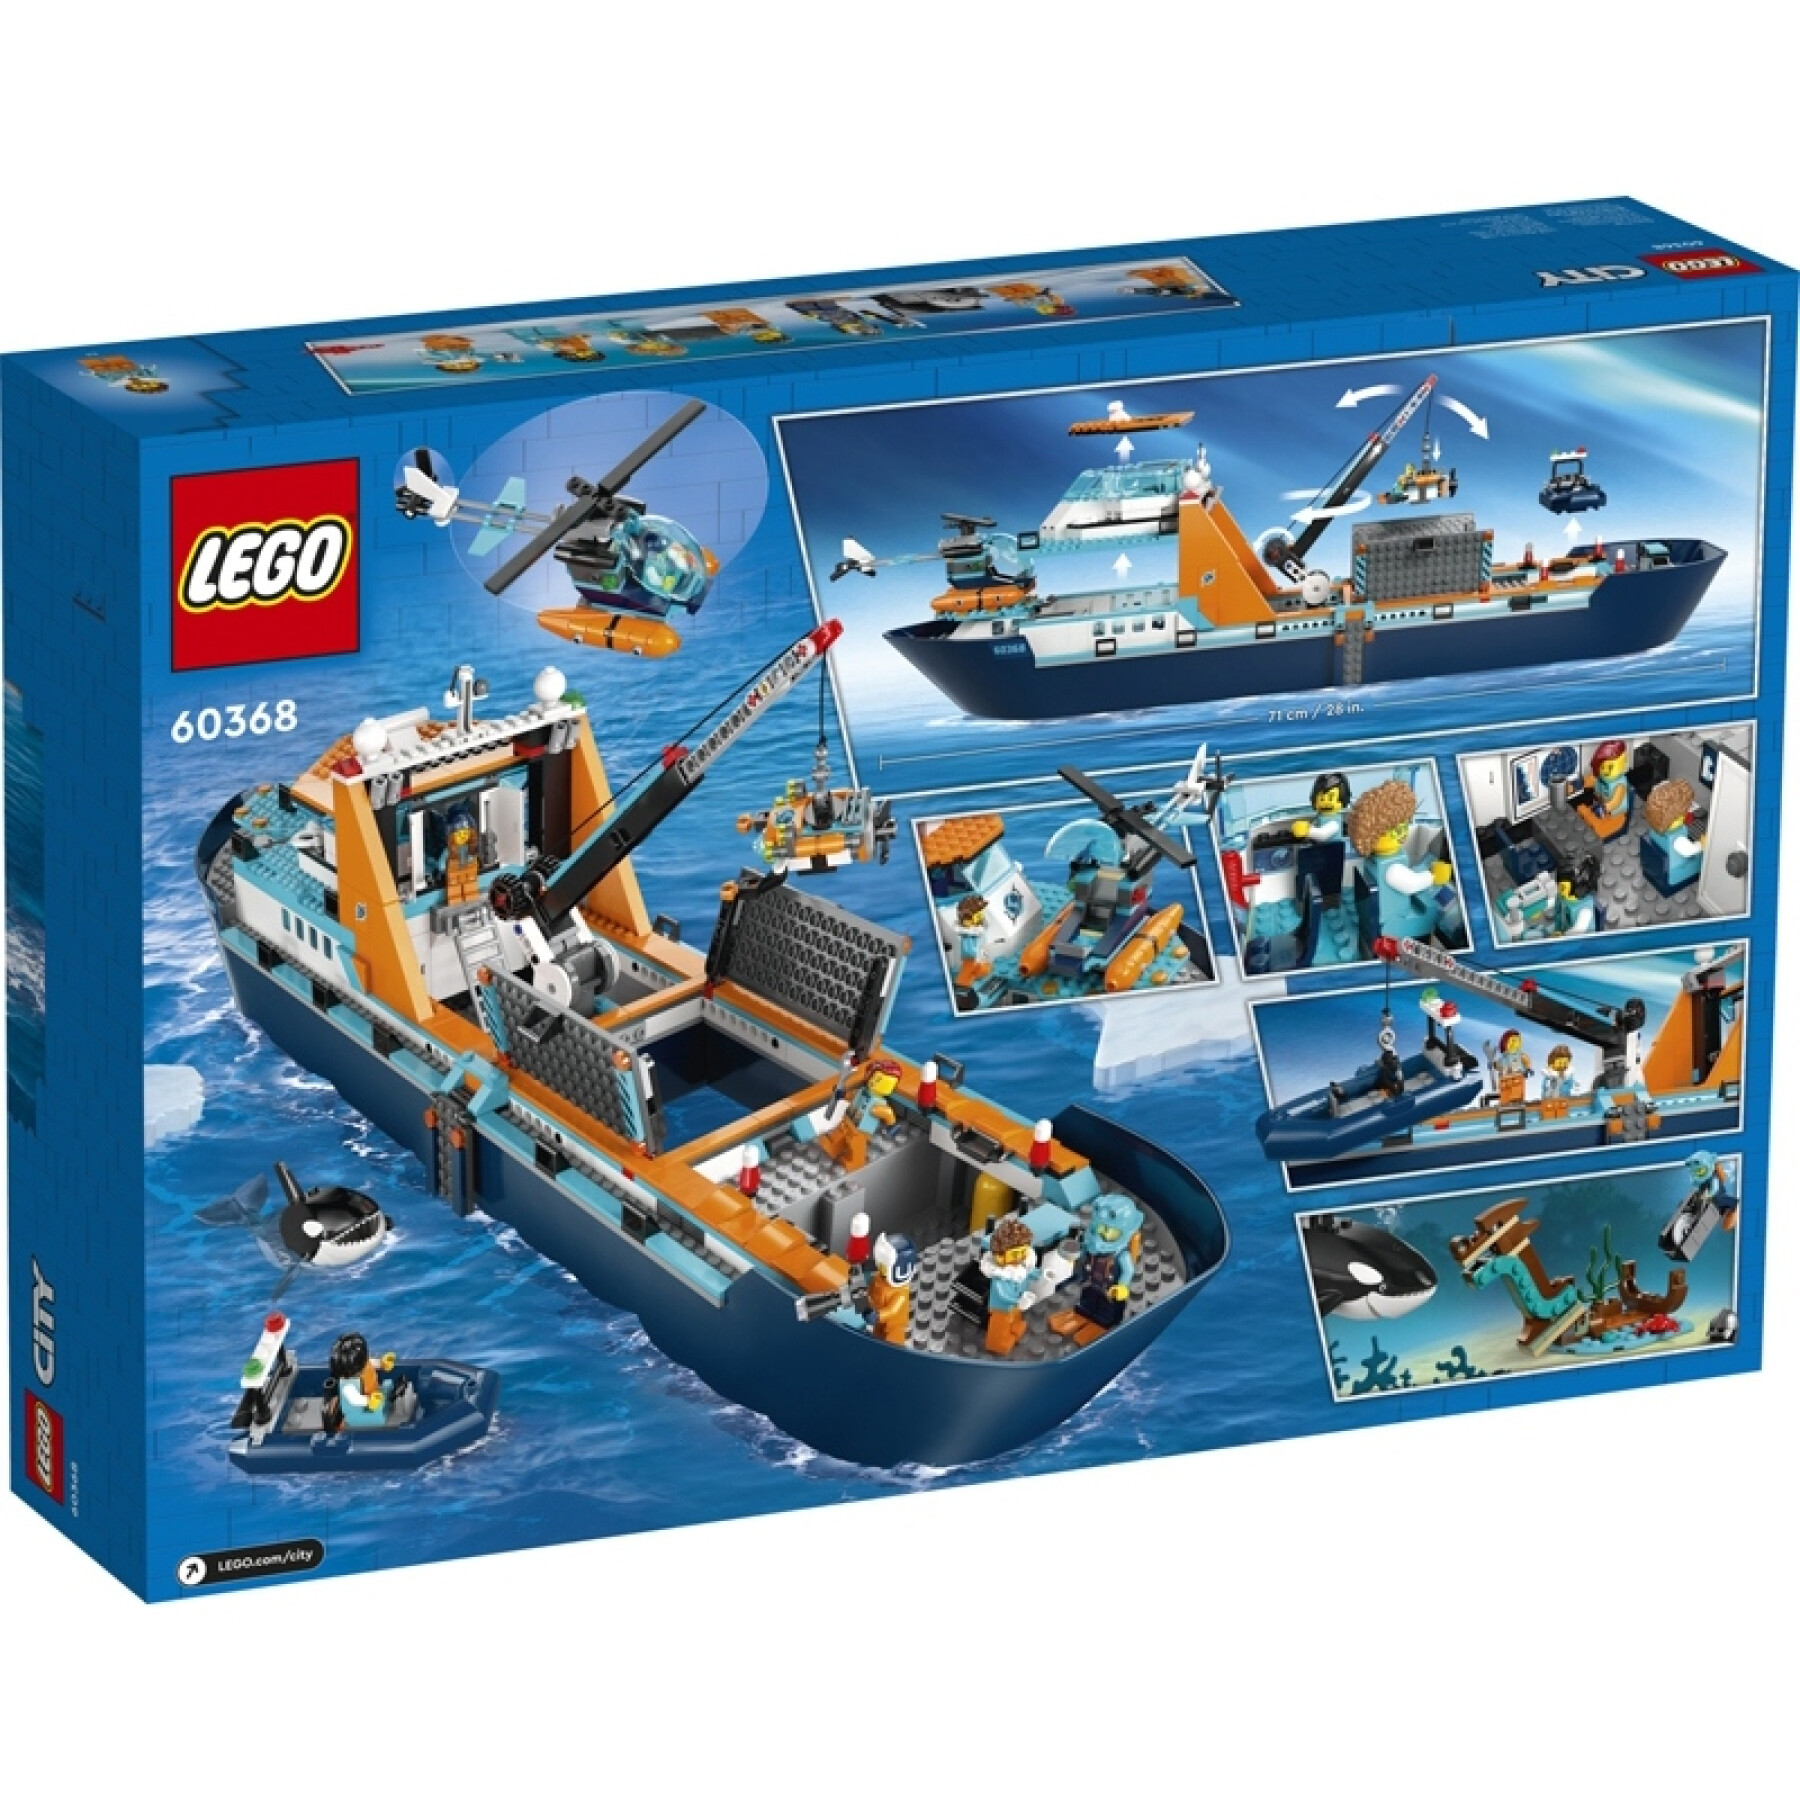 Juegos de construcción de barcos de exploración ártica Lego City